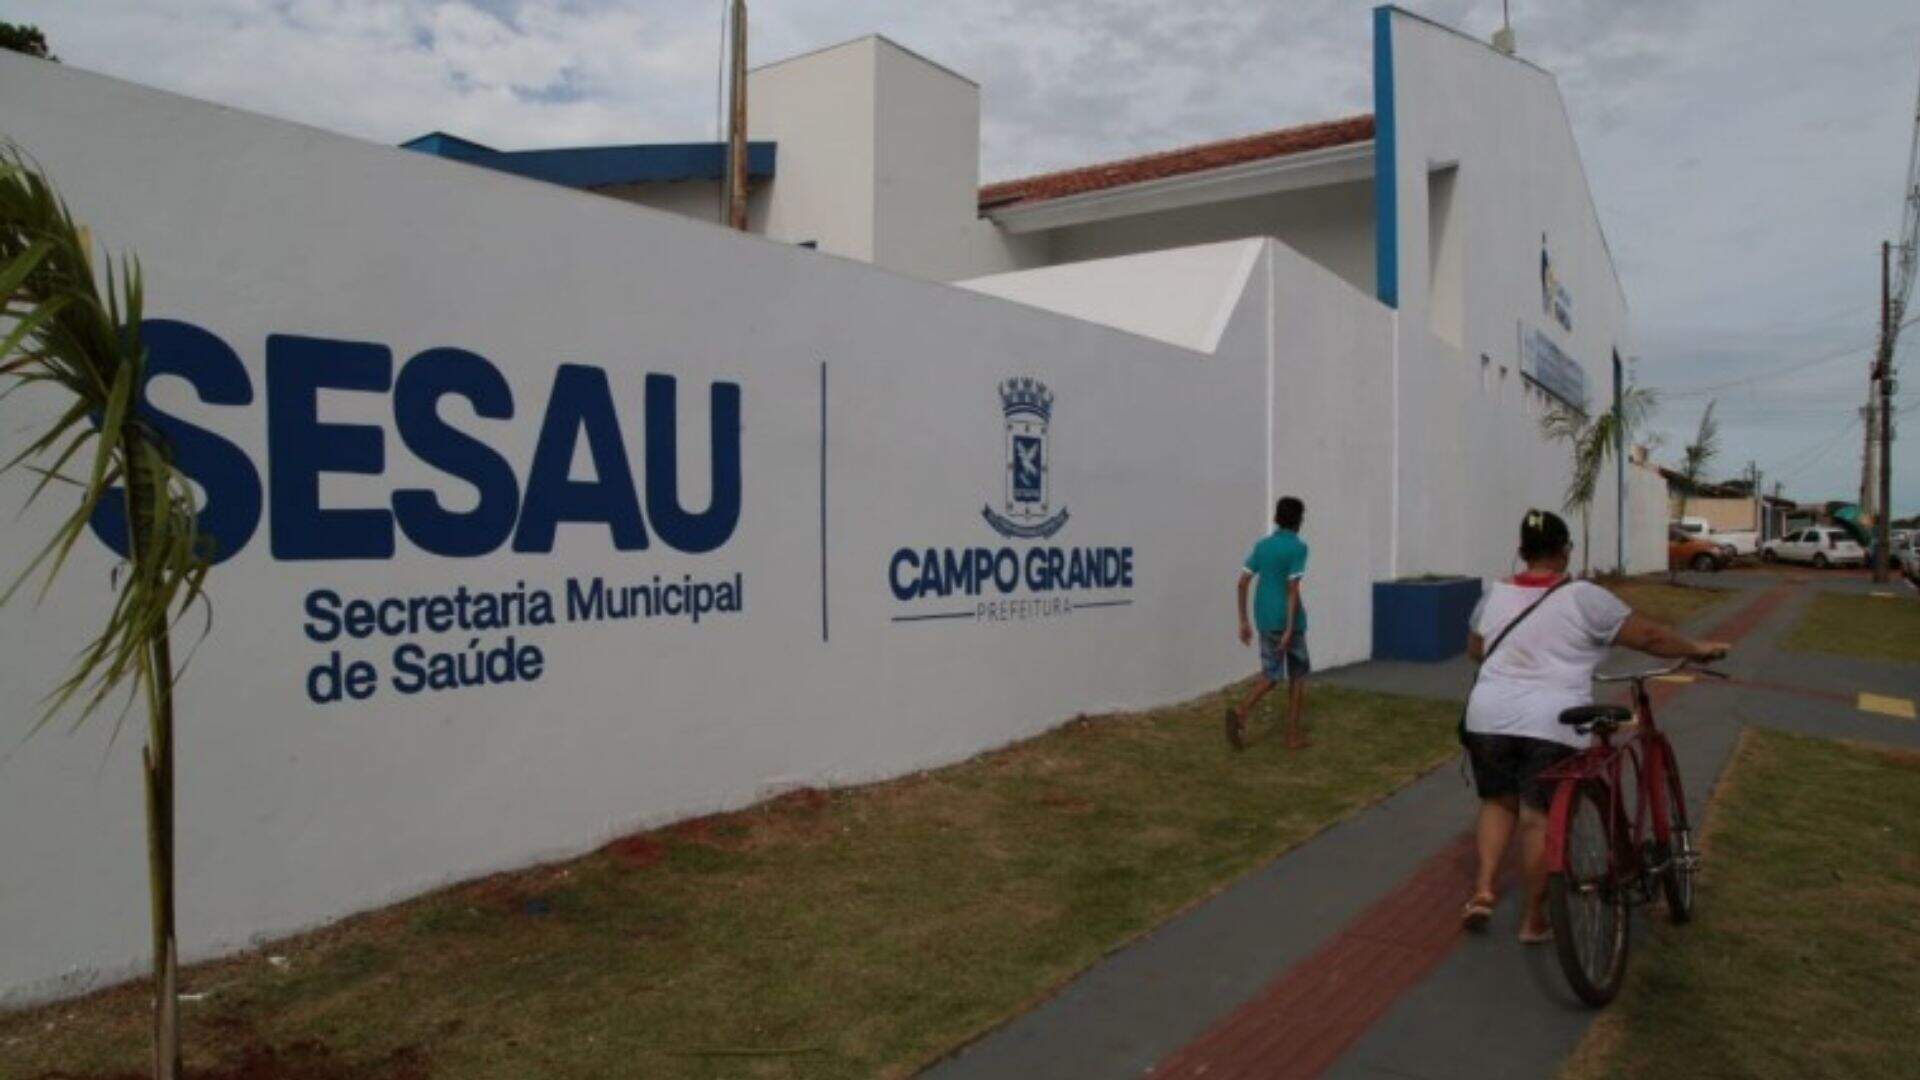 Sesau convoca profissionais de enfermagem para regularização em Campo Grande